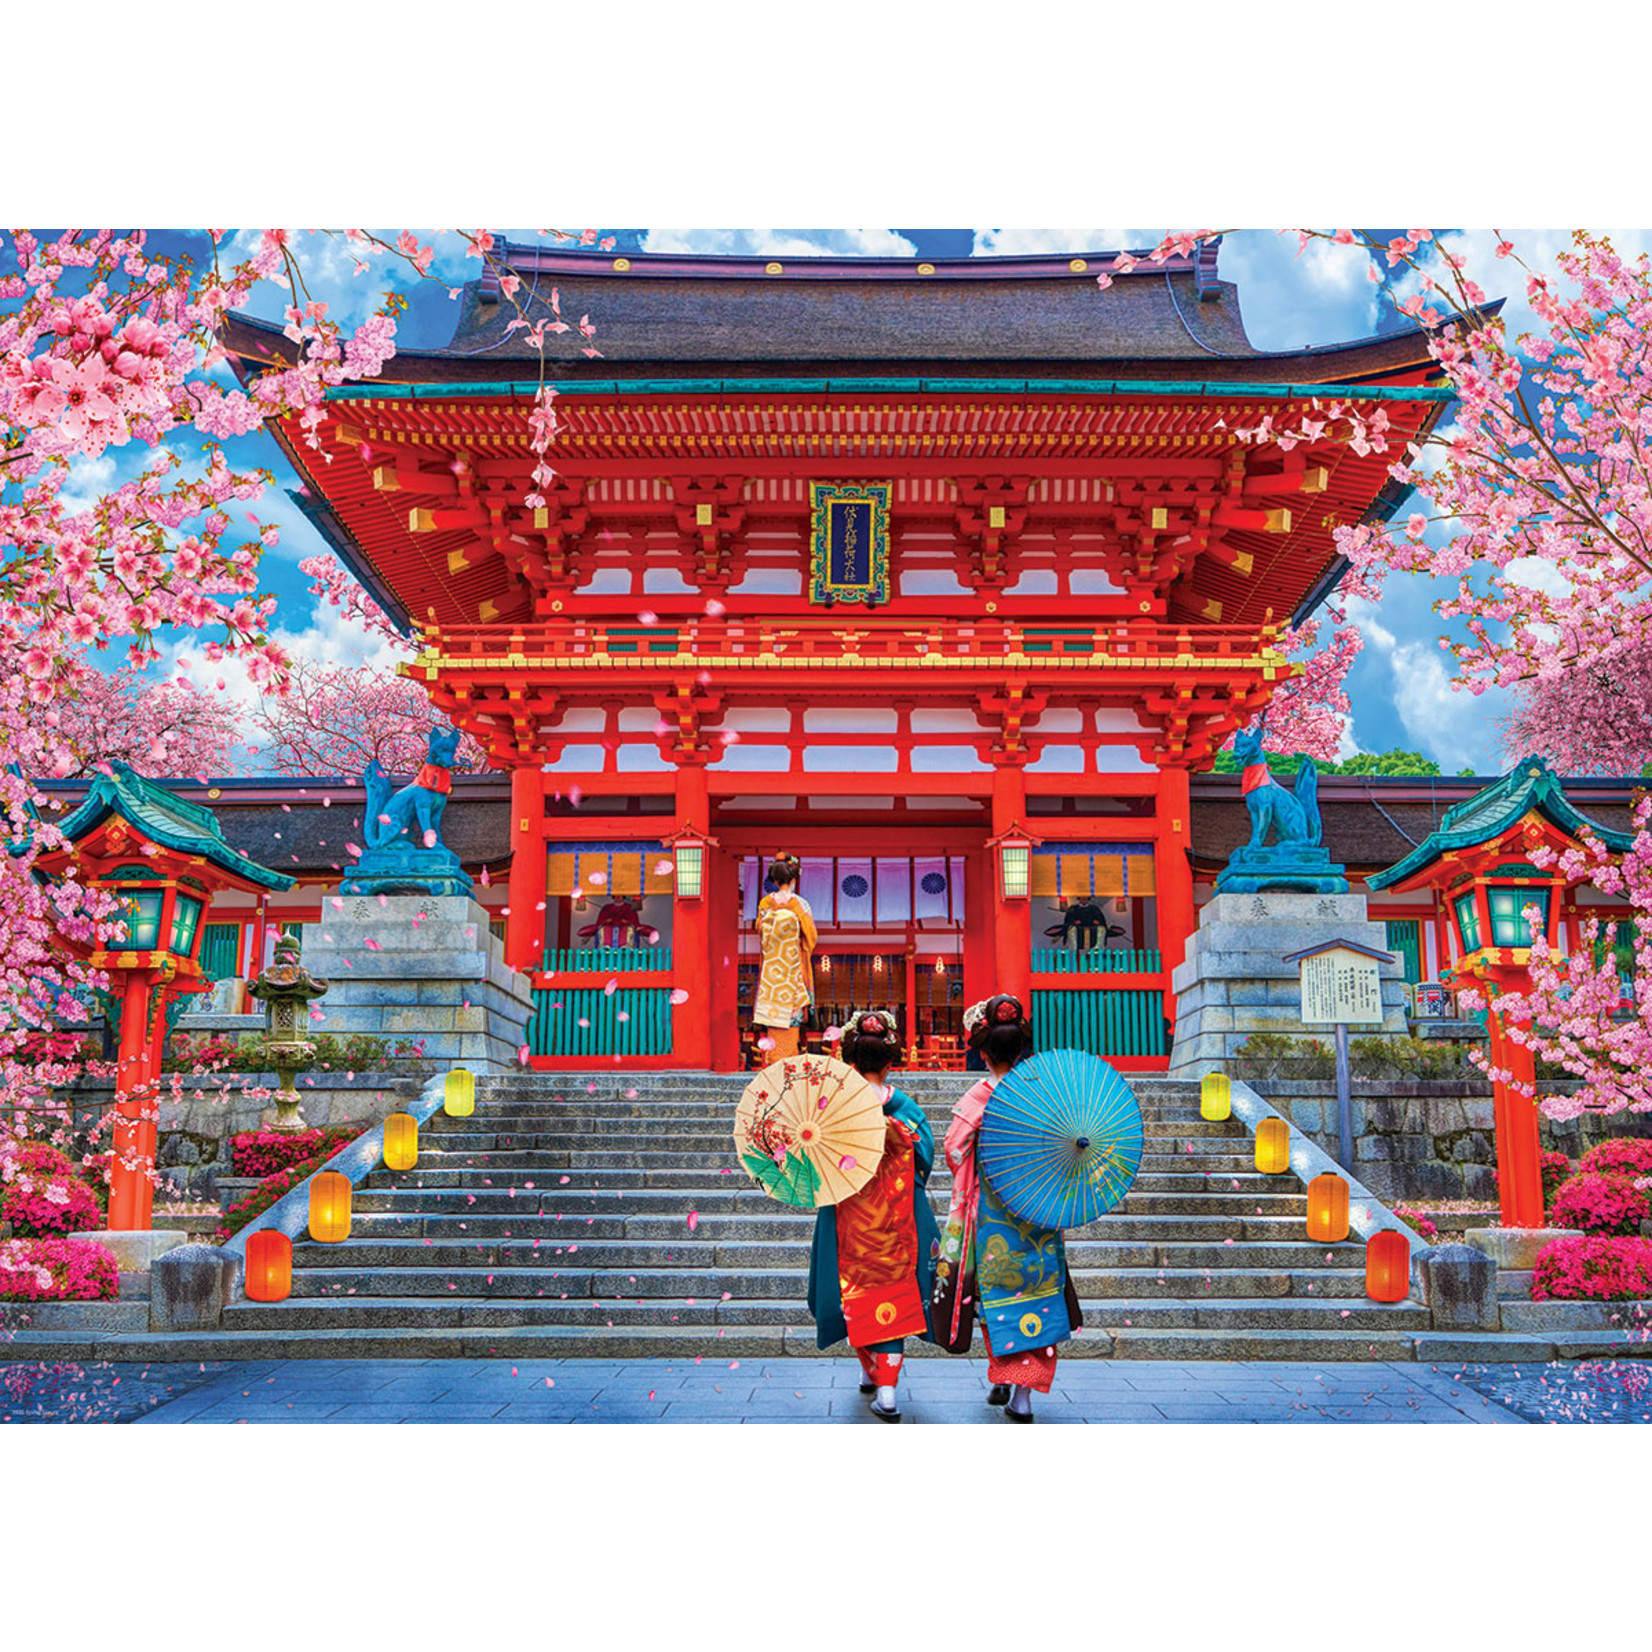 EuroGraphics Puzzles Spring Sakura Asia House 1000pc